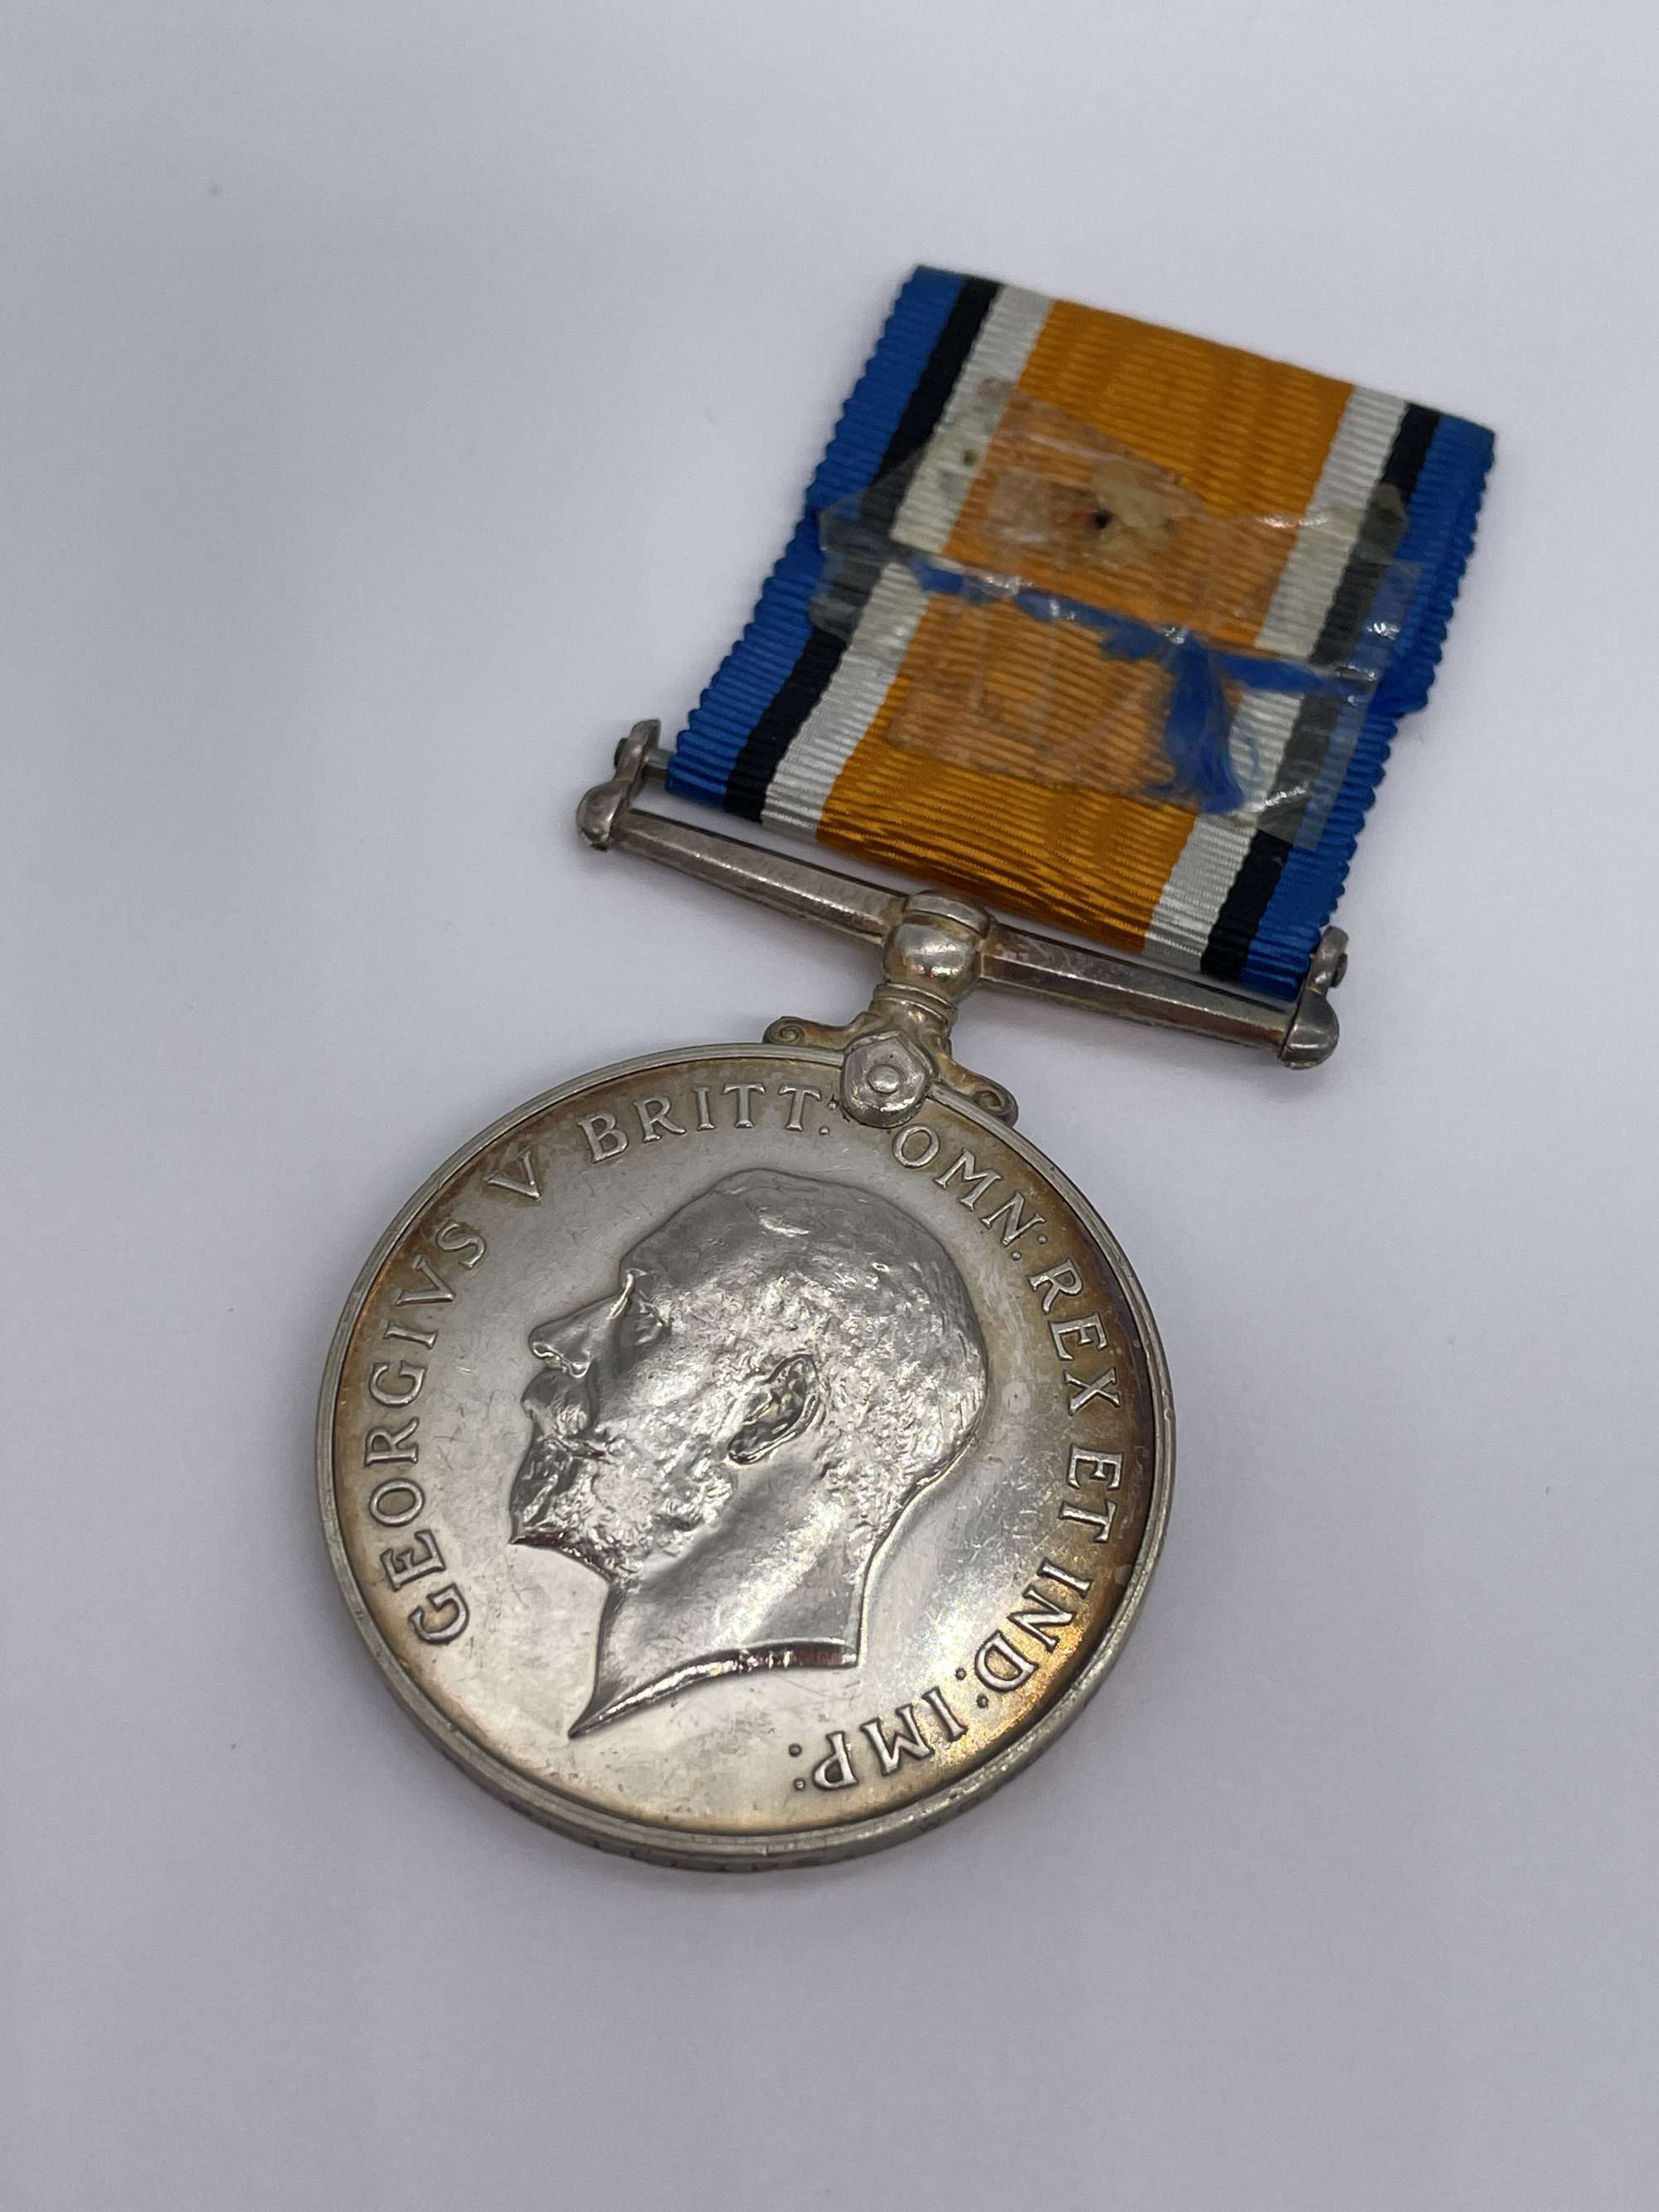 Original World War One British War Medal, Pte Phillips, Worcestershire Regiment